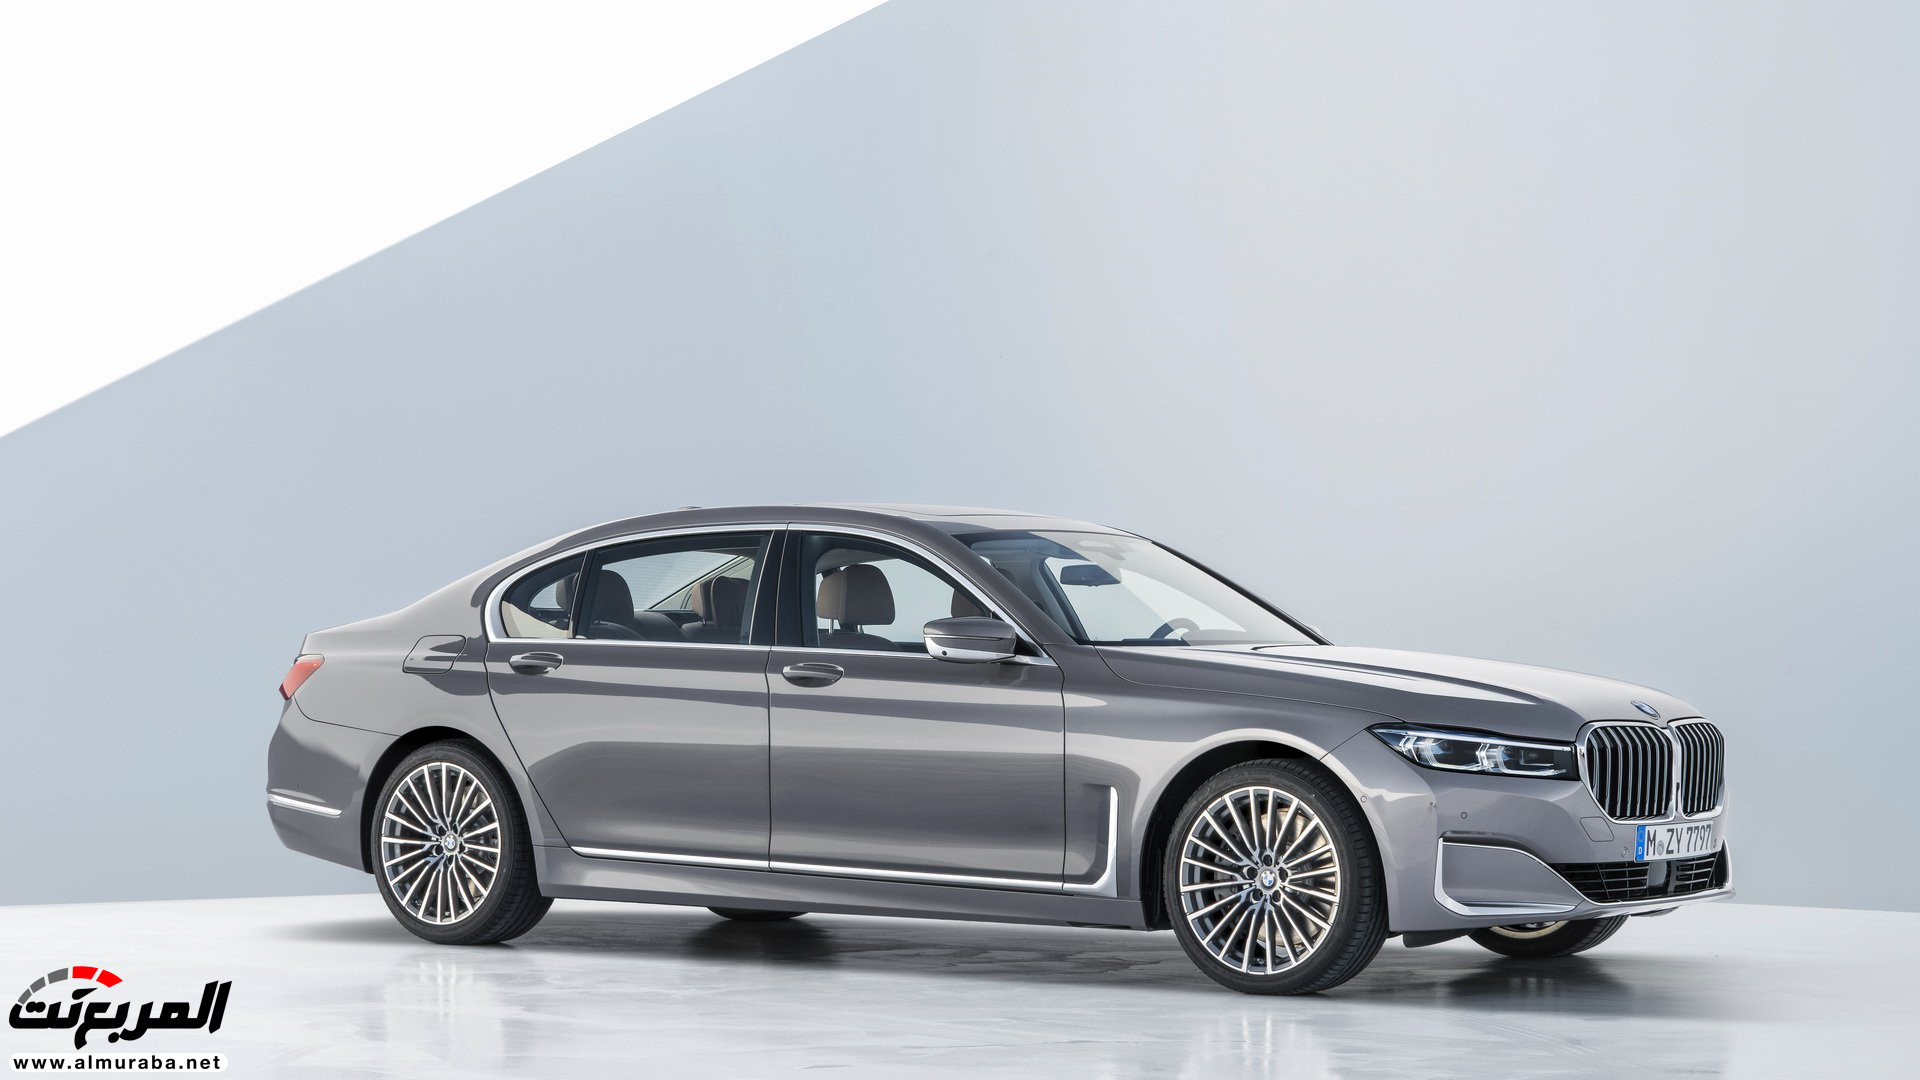 بي ام دبليو الفئة السابعة 2020 المحدثة تكشف نفسها رسمياً "صور ومواصفات" BMW 7 Series 254